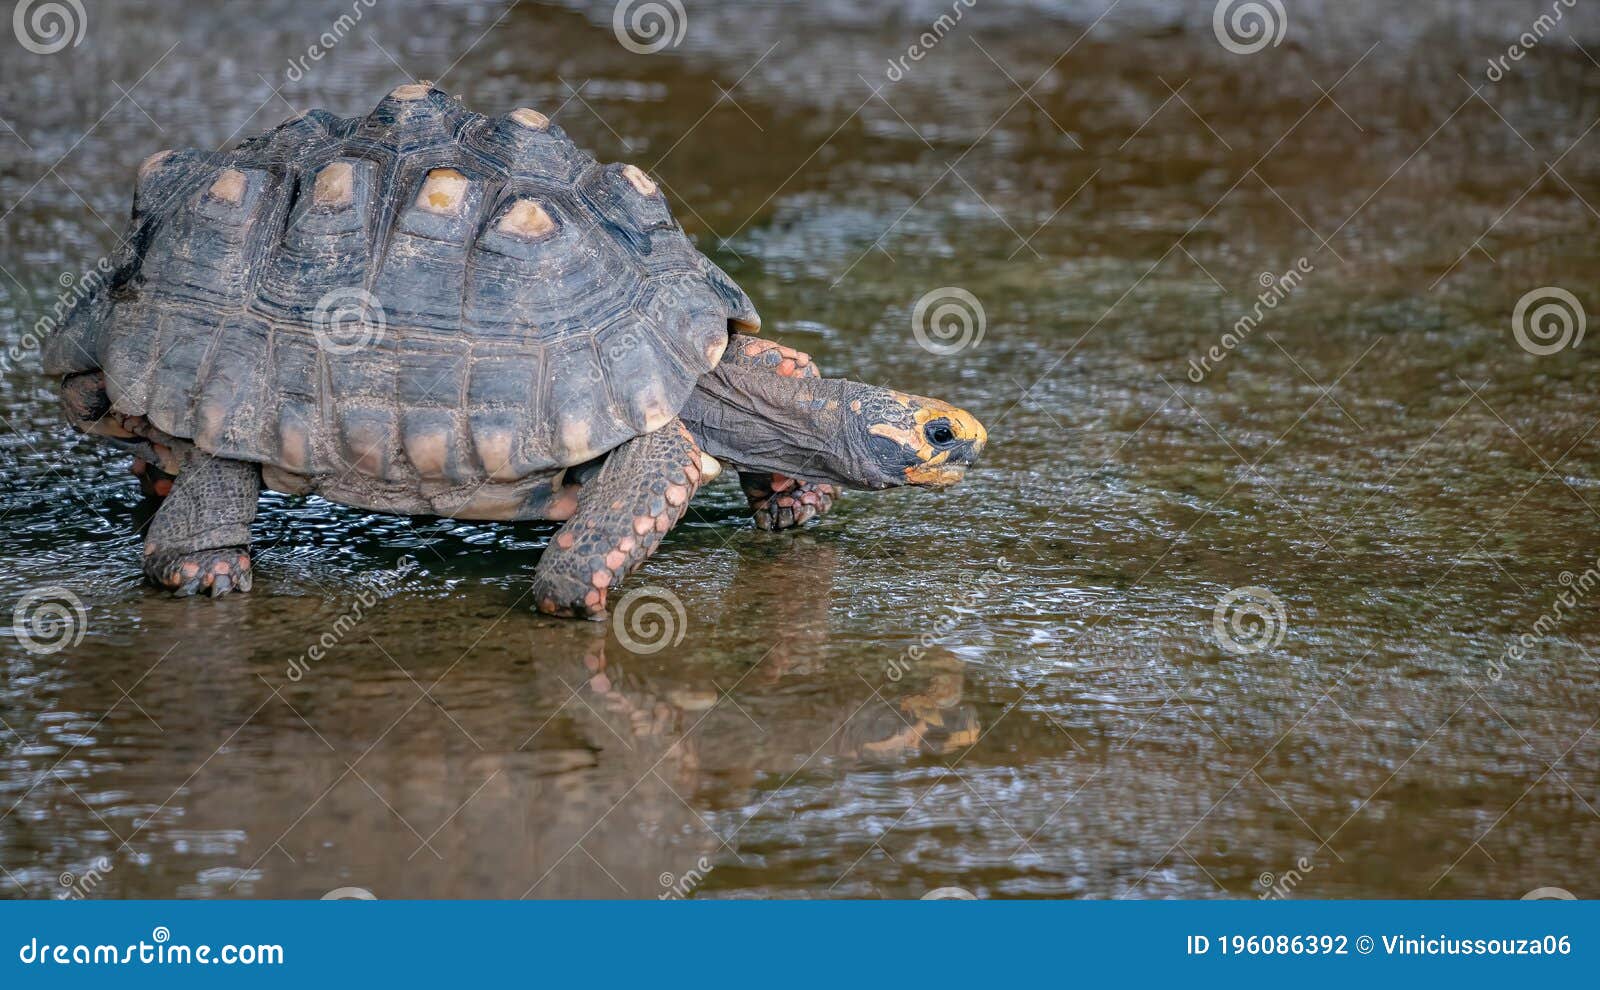 brazilian giant tortoise